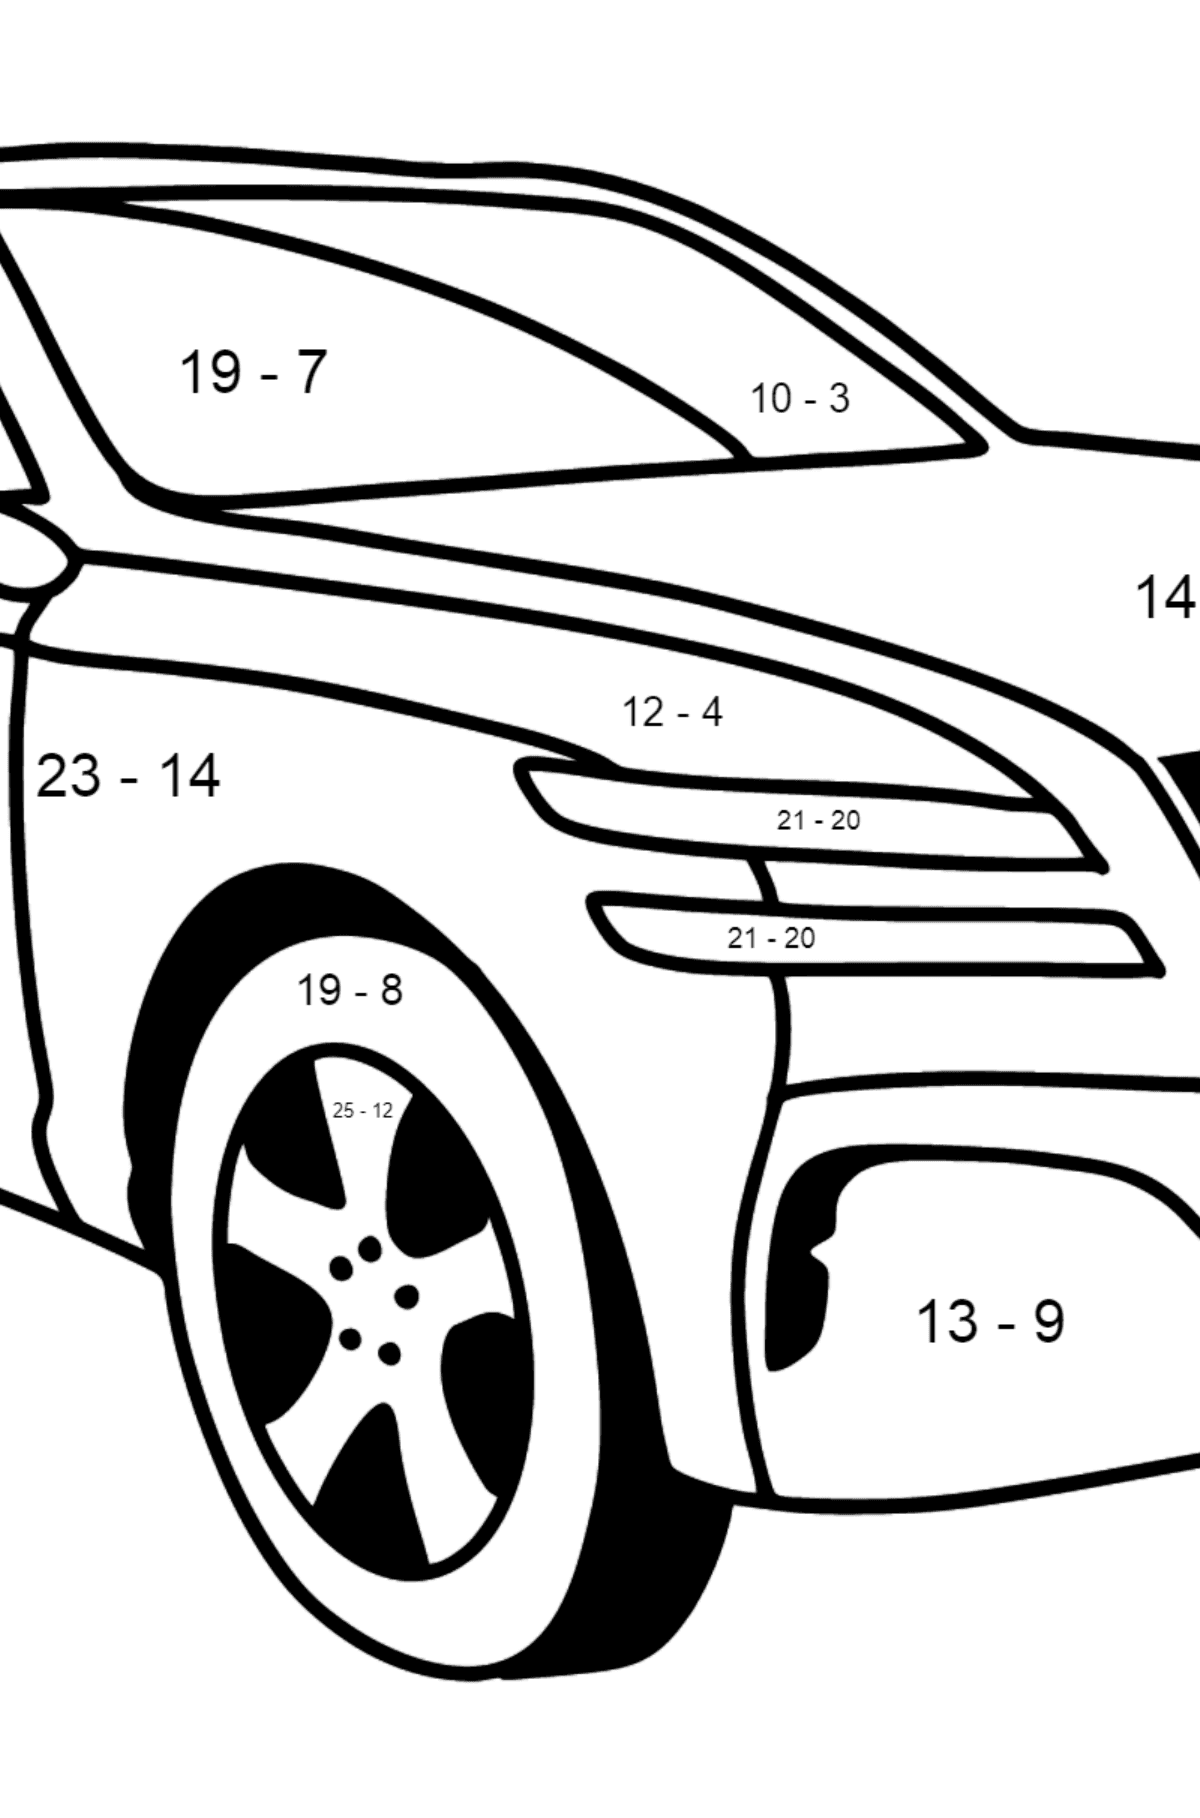 Genesis Auto Ausmalbild - Mathe Ausmalbilder - Subtraktion für Kinder